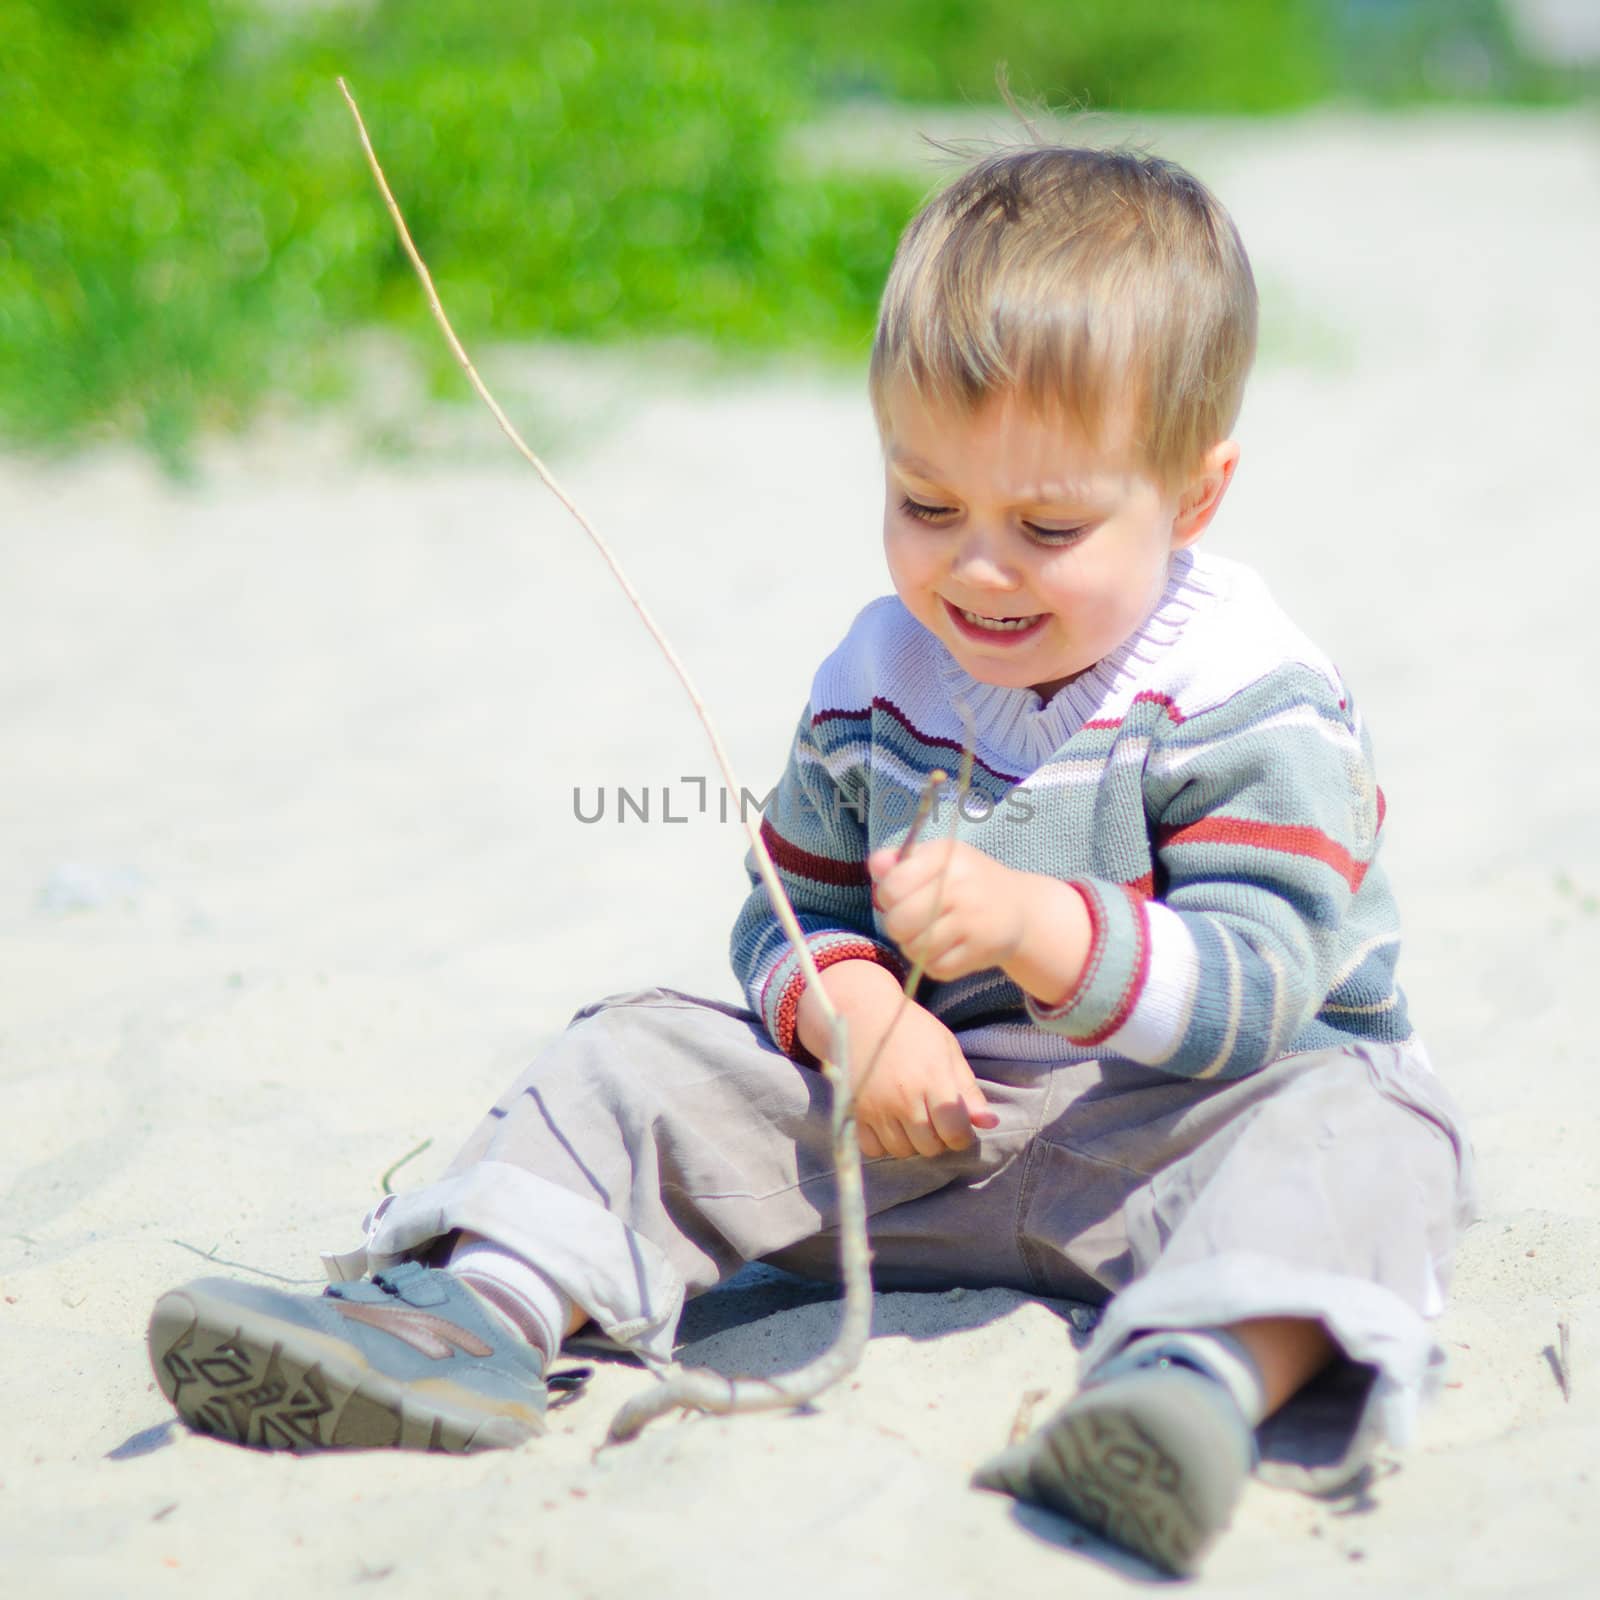 The cute boy plaing on a sand